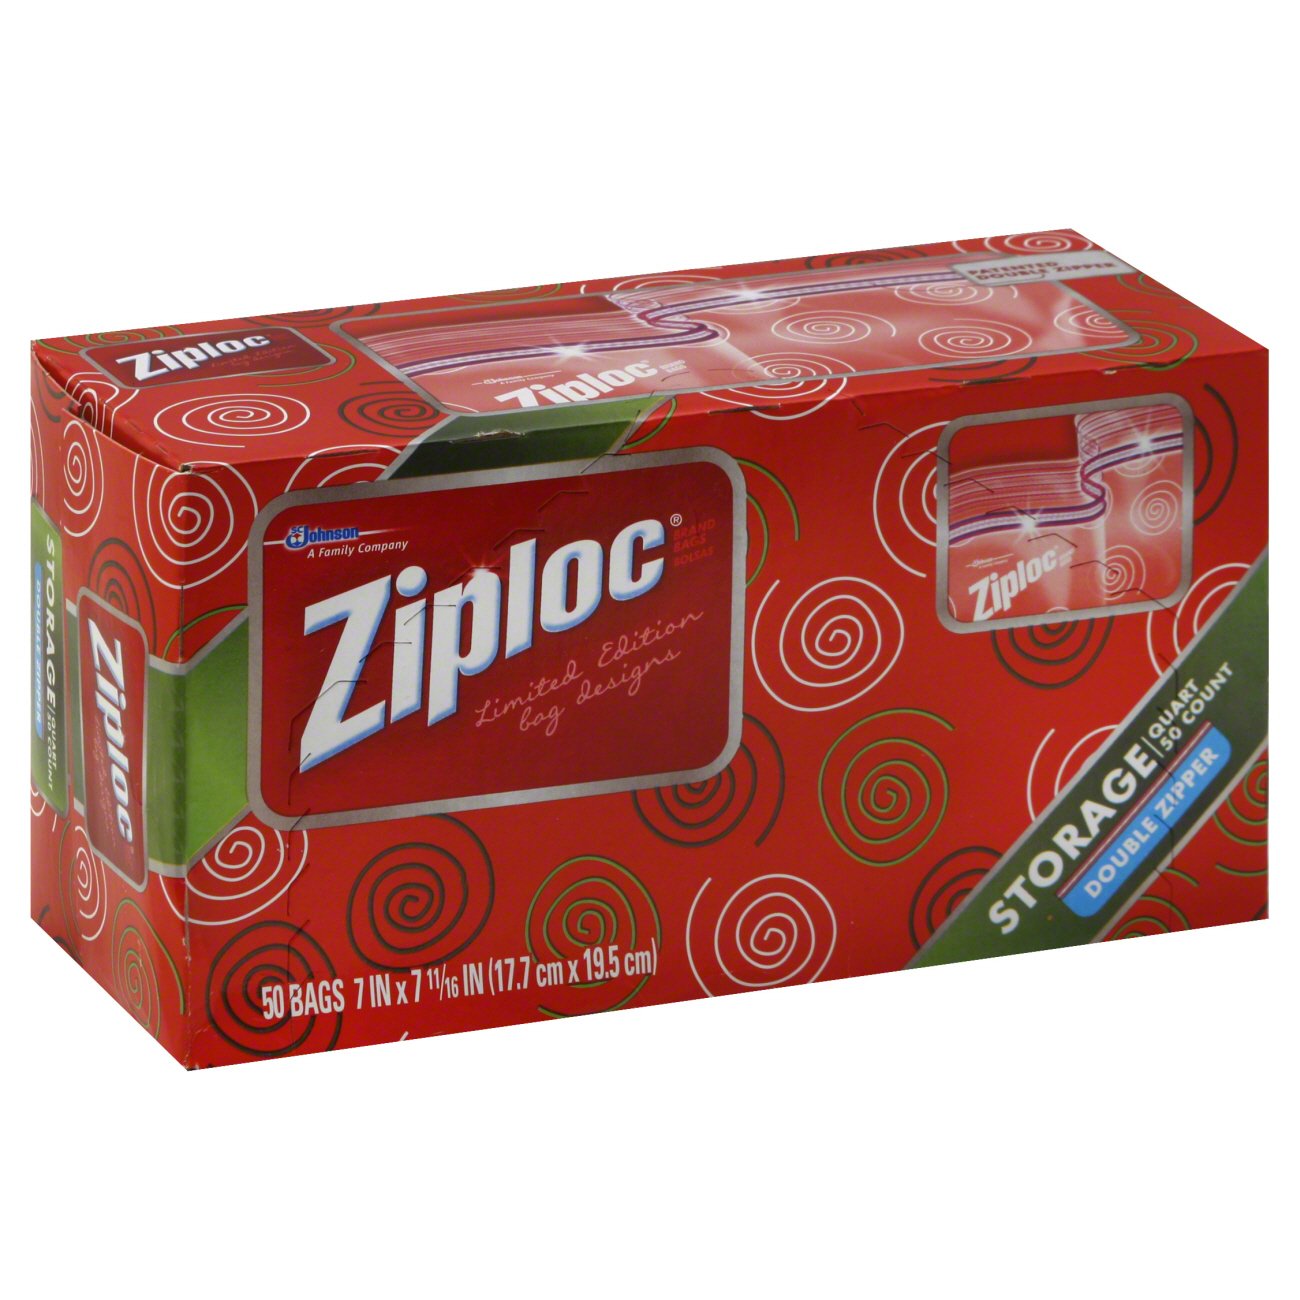 Ziploc Double Zipper Quart Storage Bags - Shop Storage Bags at H-E-B